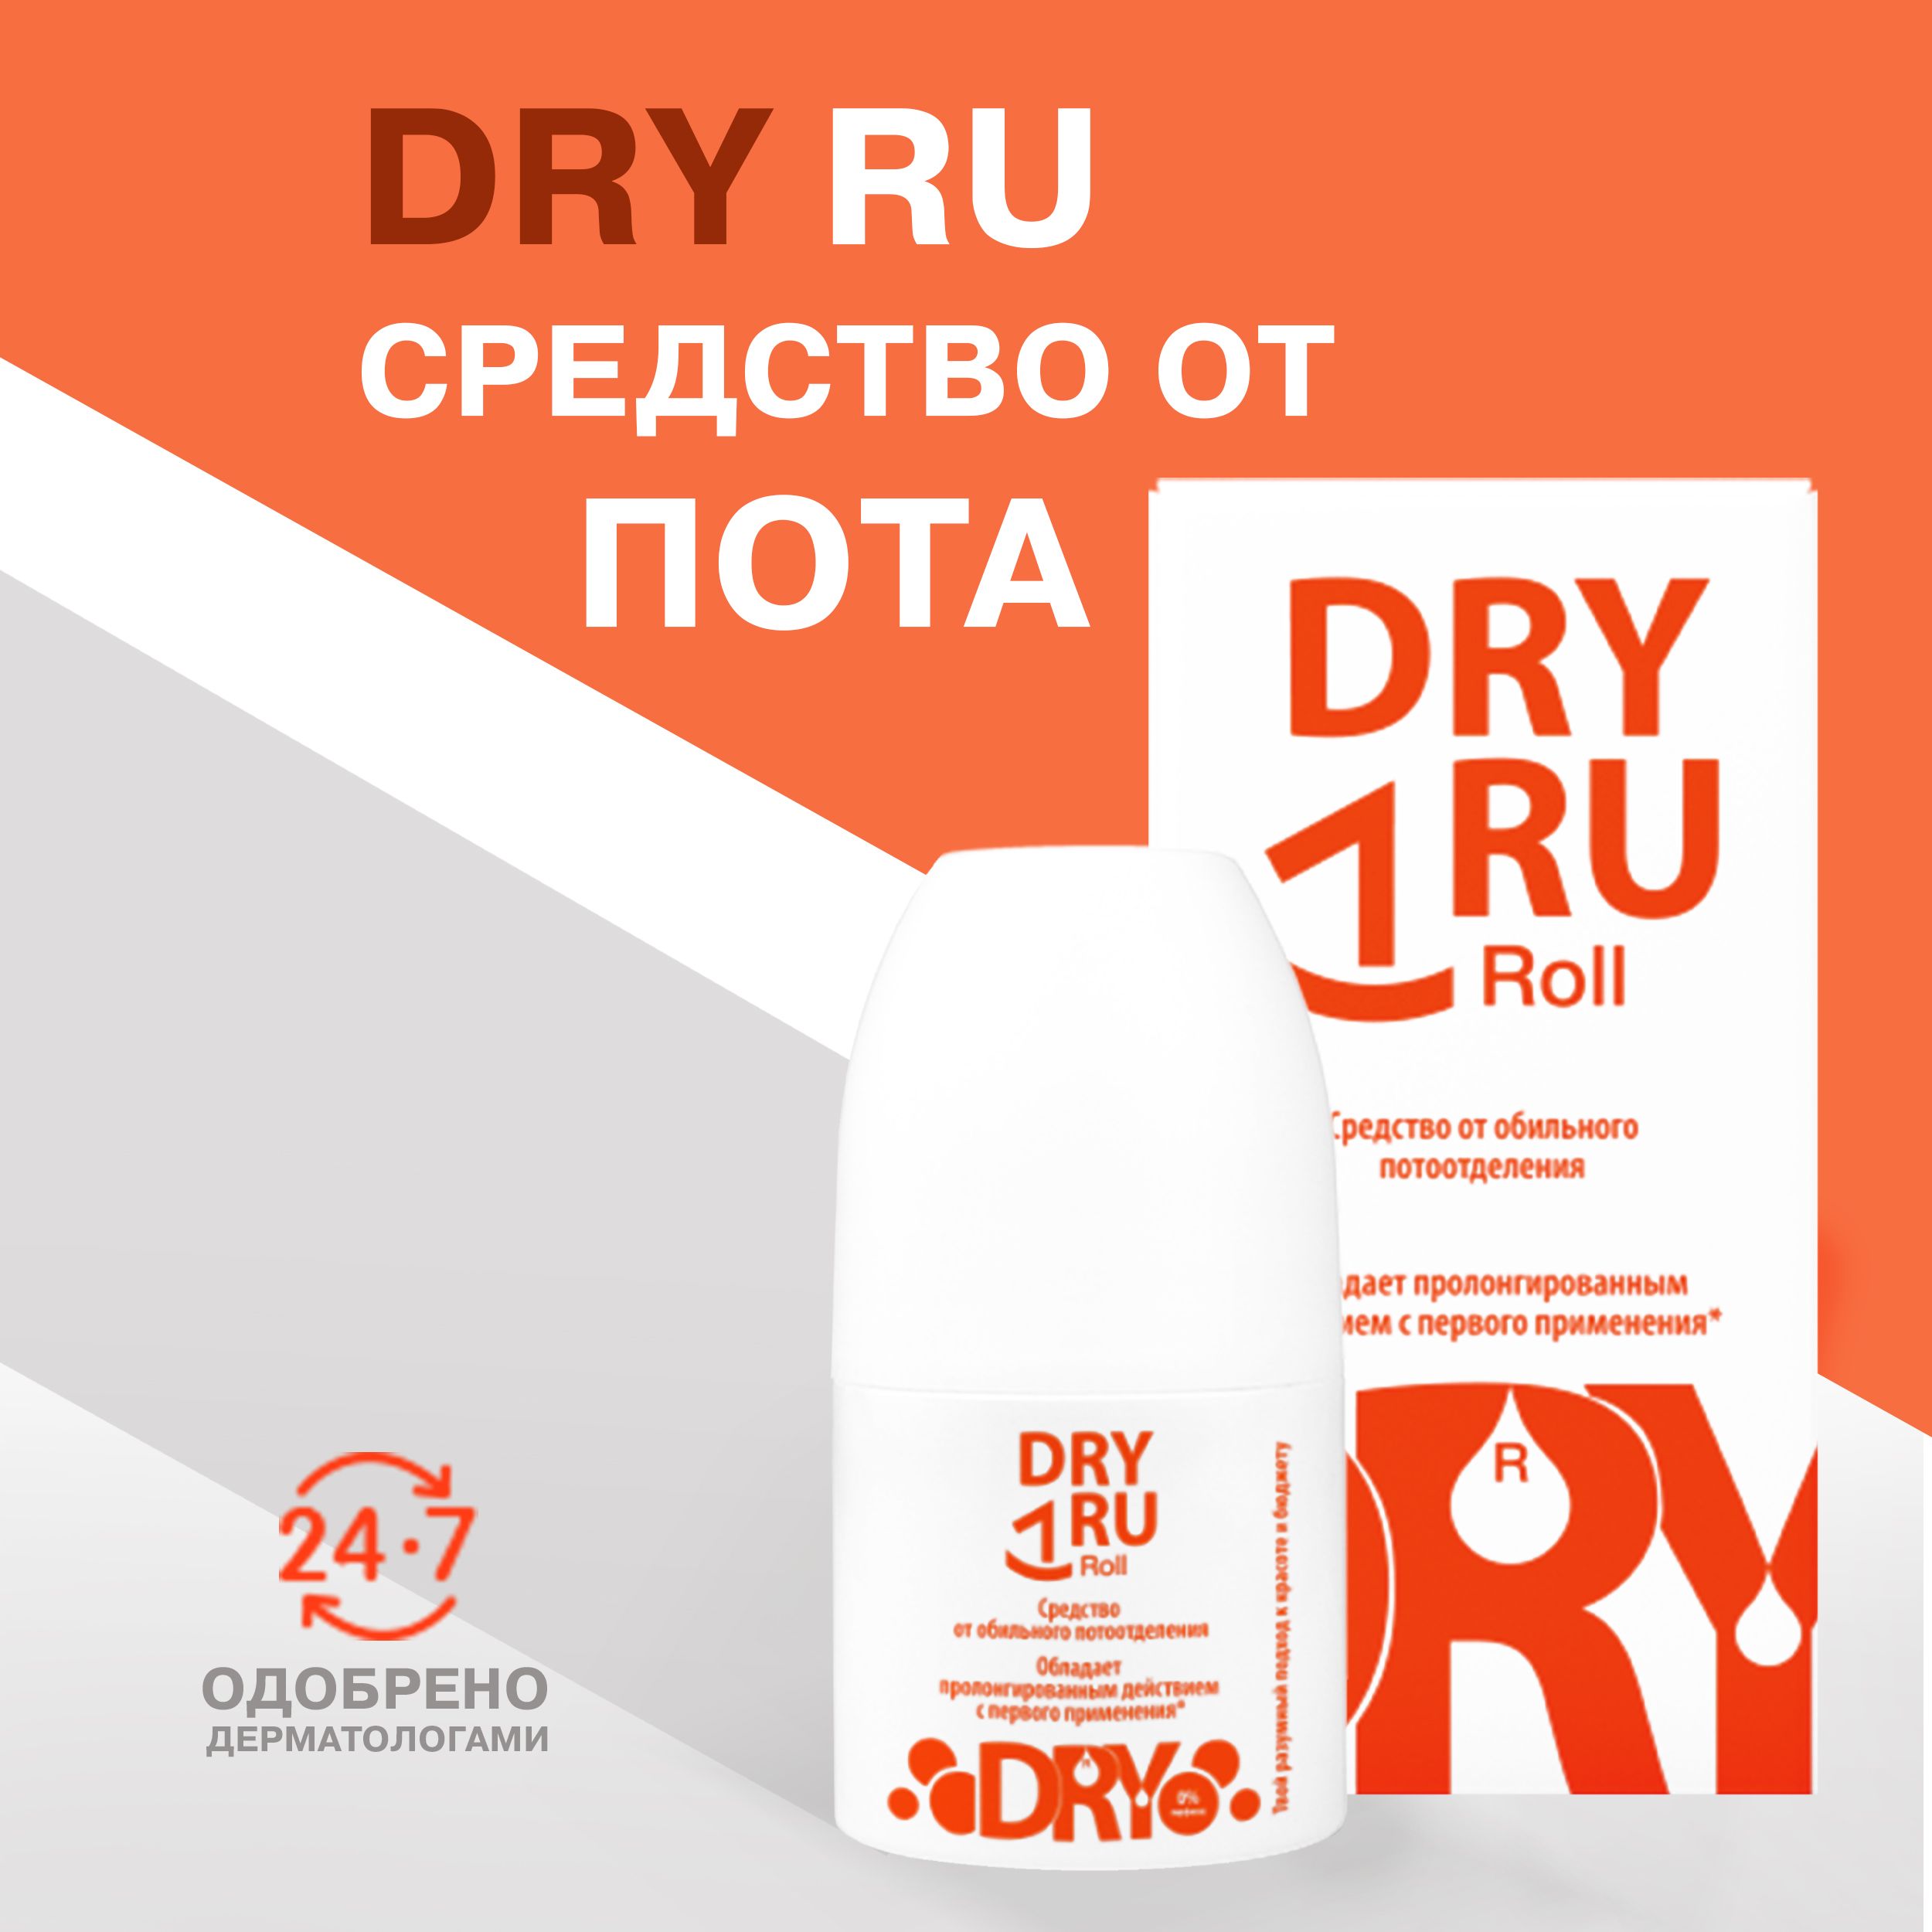 Dry ru отзывы. Dry ru Roll. Драй ру ролл. Dry ru. Small Dry Roll.